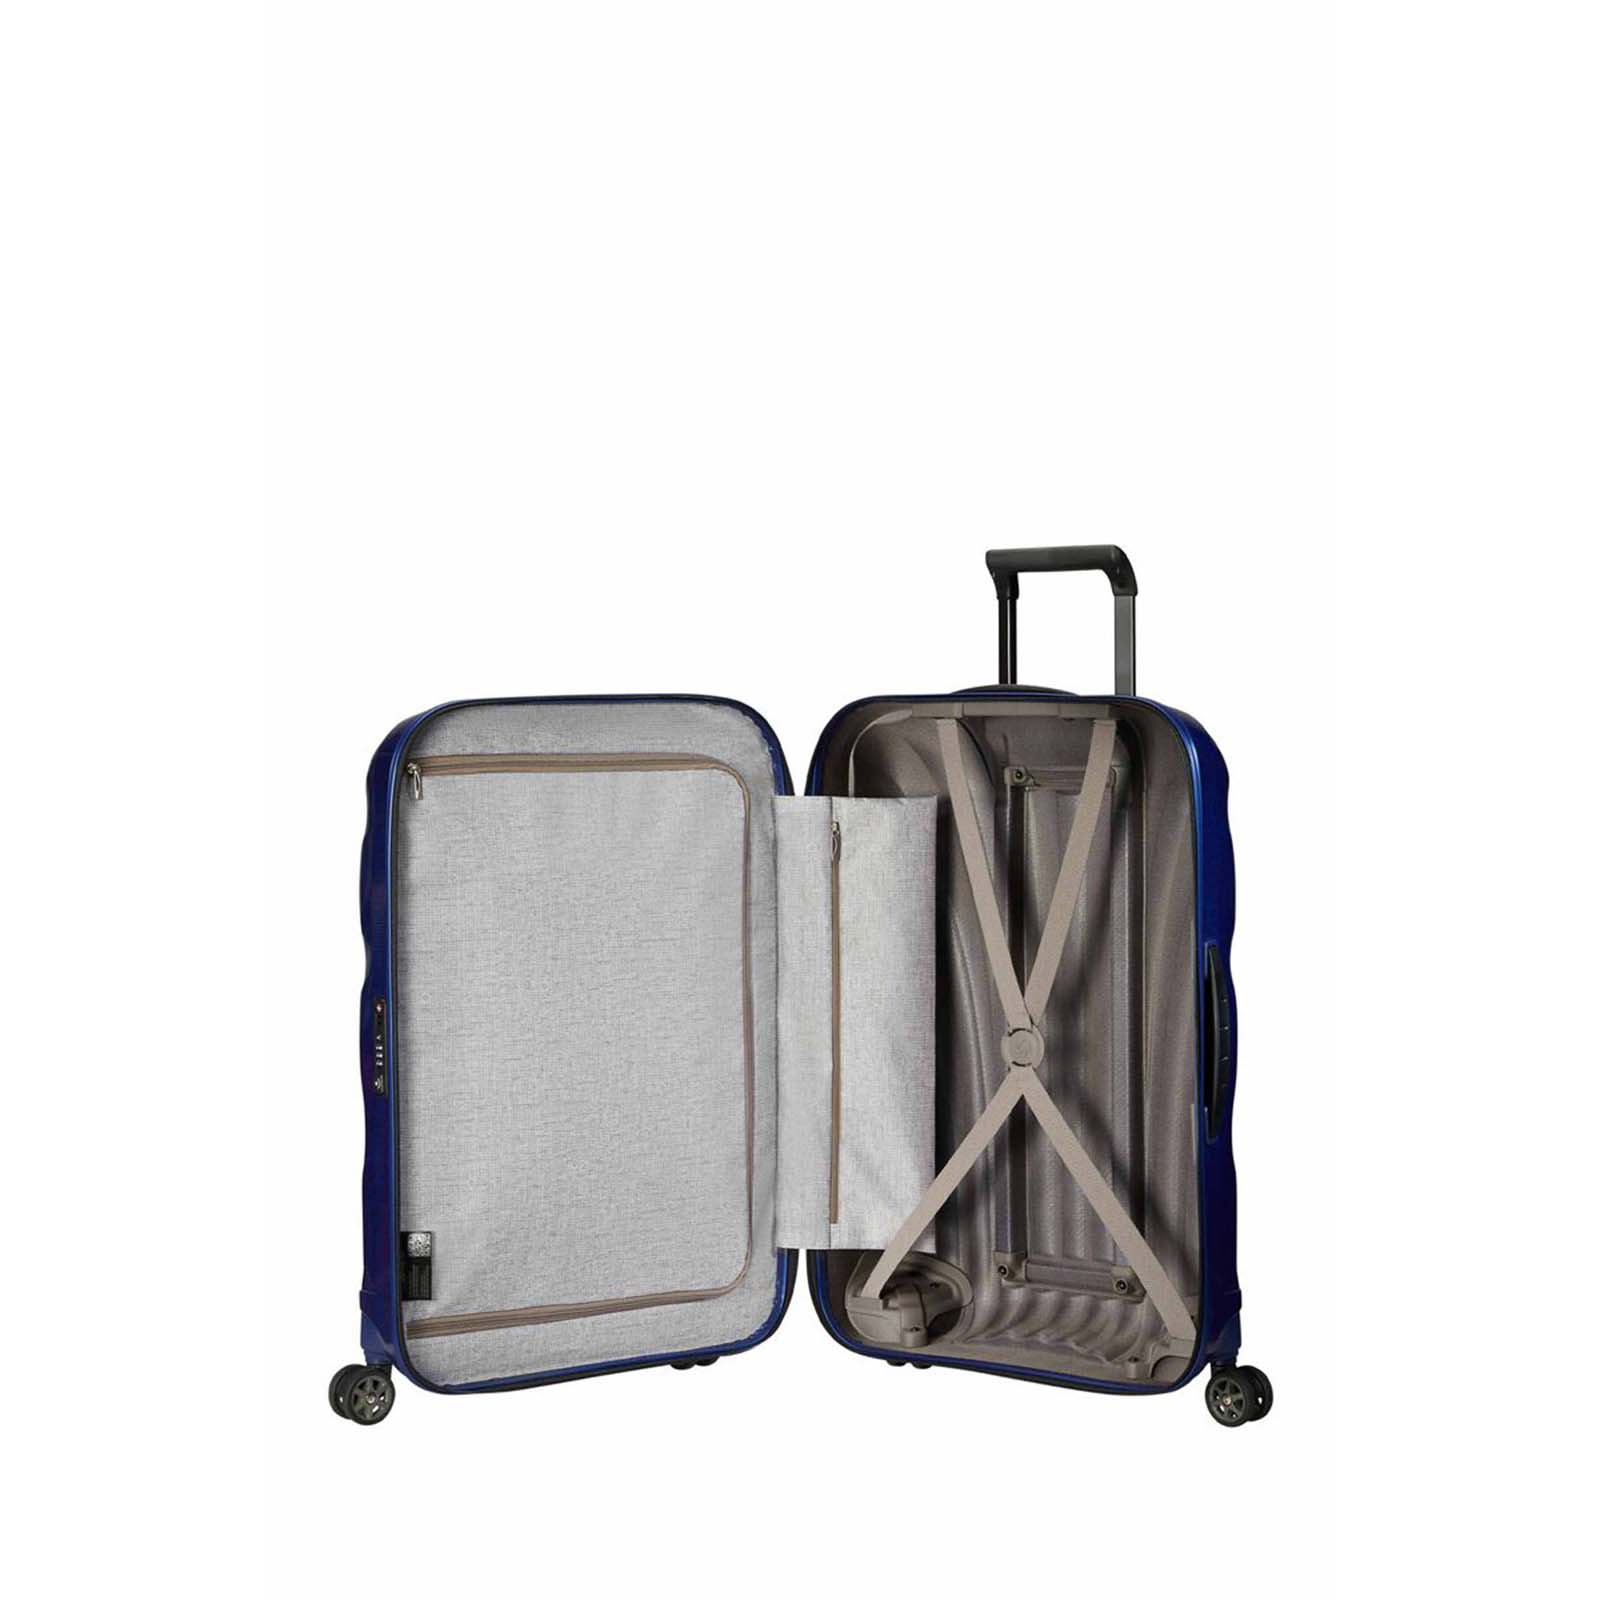 Samsonite-C-Lite-75cm-Suitcase-Deep-Blue-Open